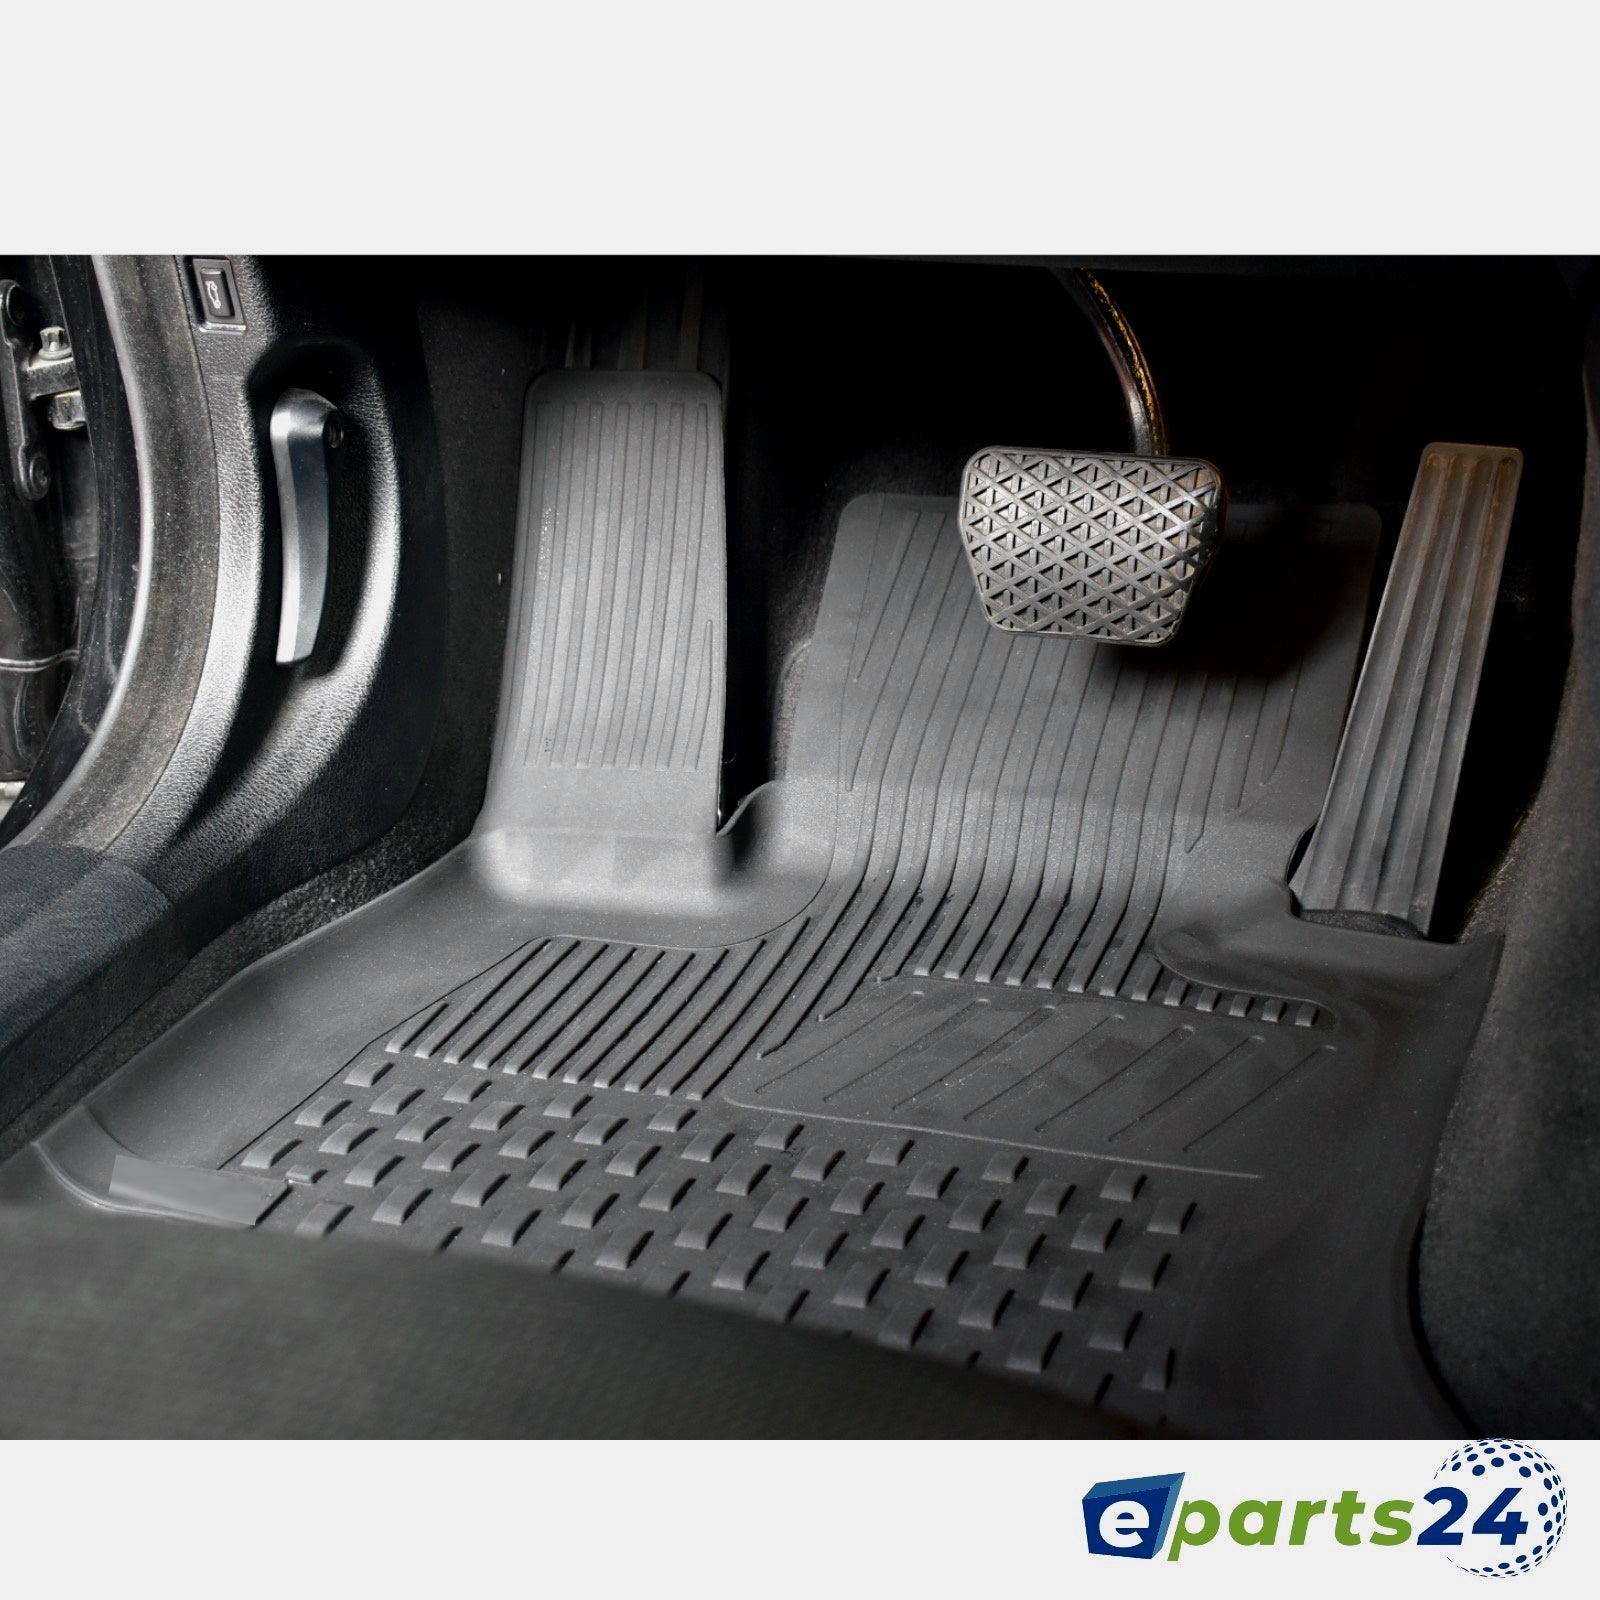 teileplus24 Auto-Fußmatten EF210 Velours Fußmatten Set kompatibel mit VW Passat  B8 3G 2014